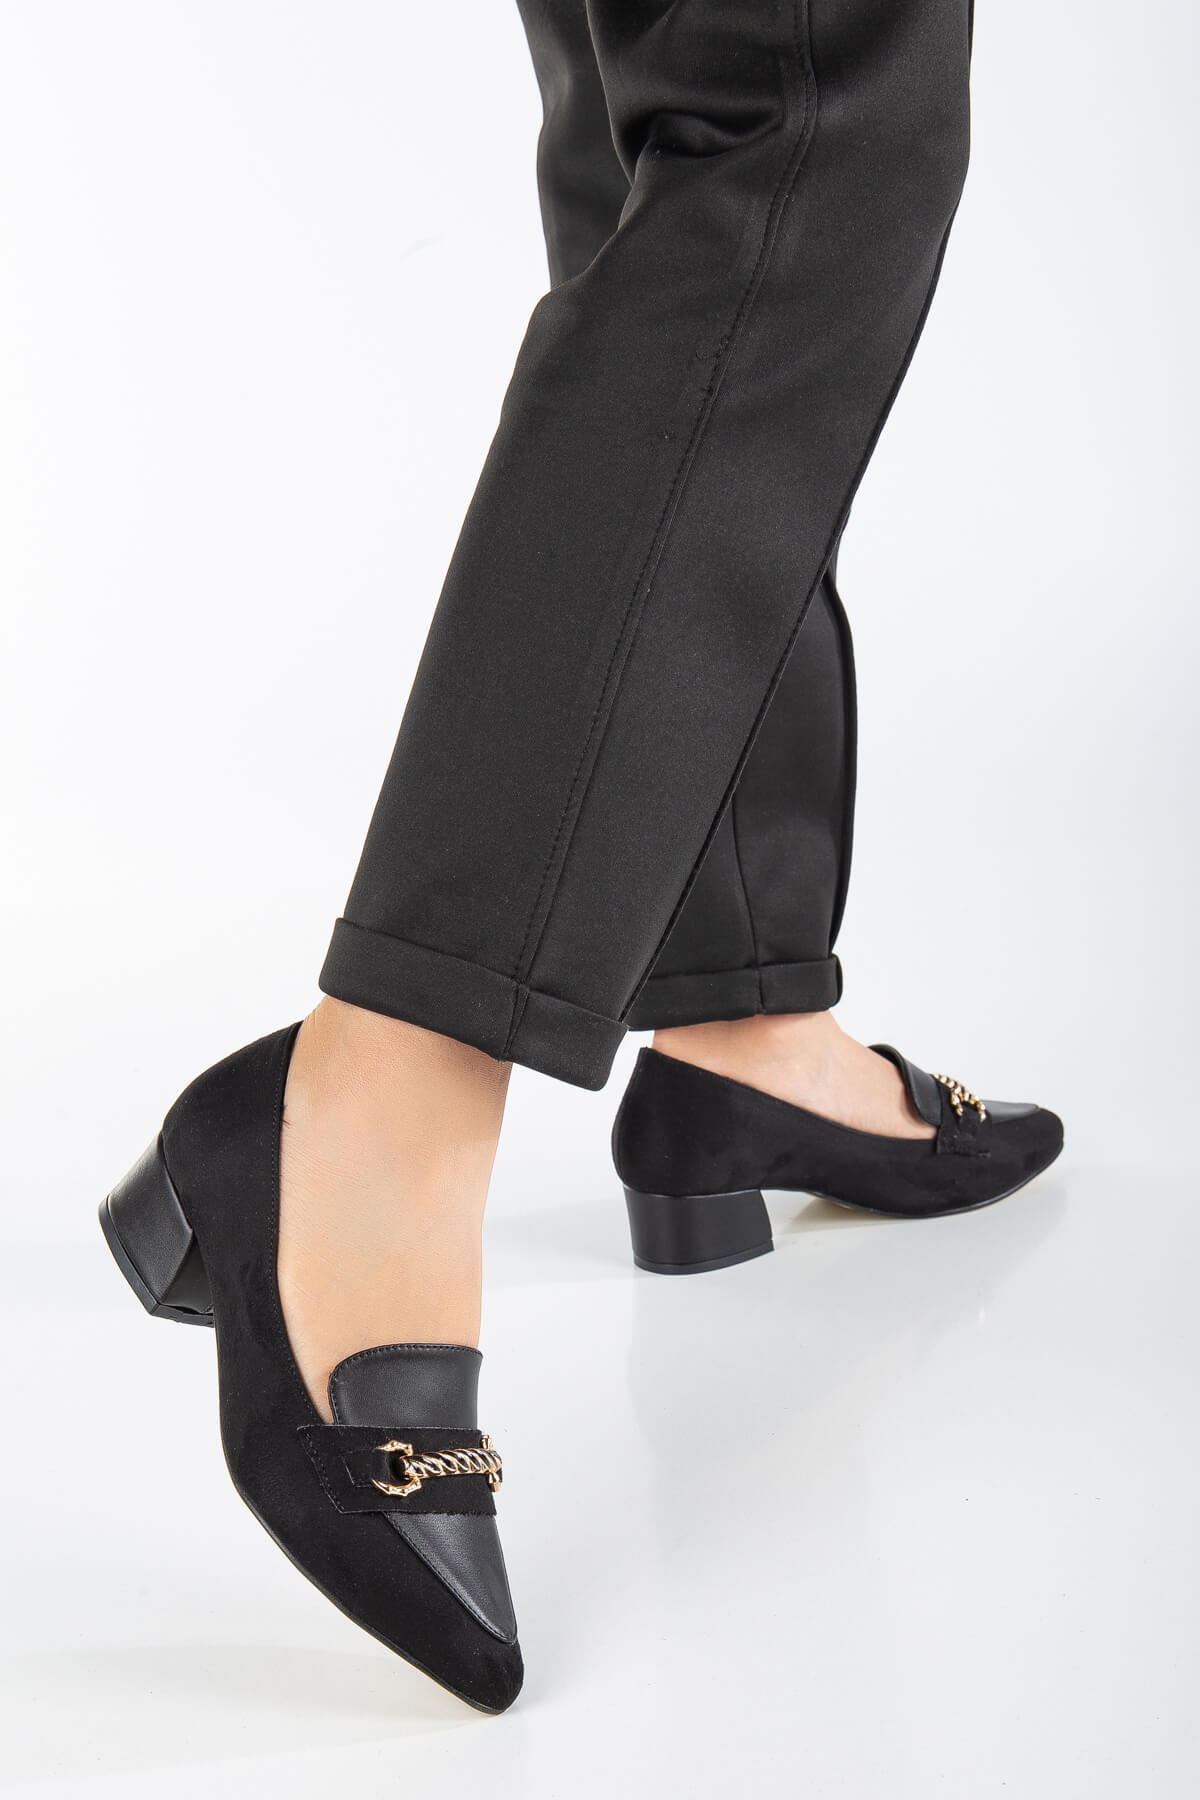 AUGUSTA Siyah Süet - Cilt Toka Detaylı Kadın Alçak Topuklu Ayakkabı 